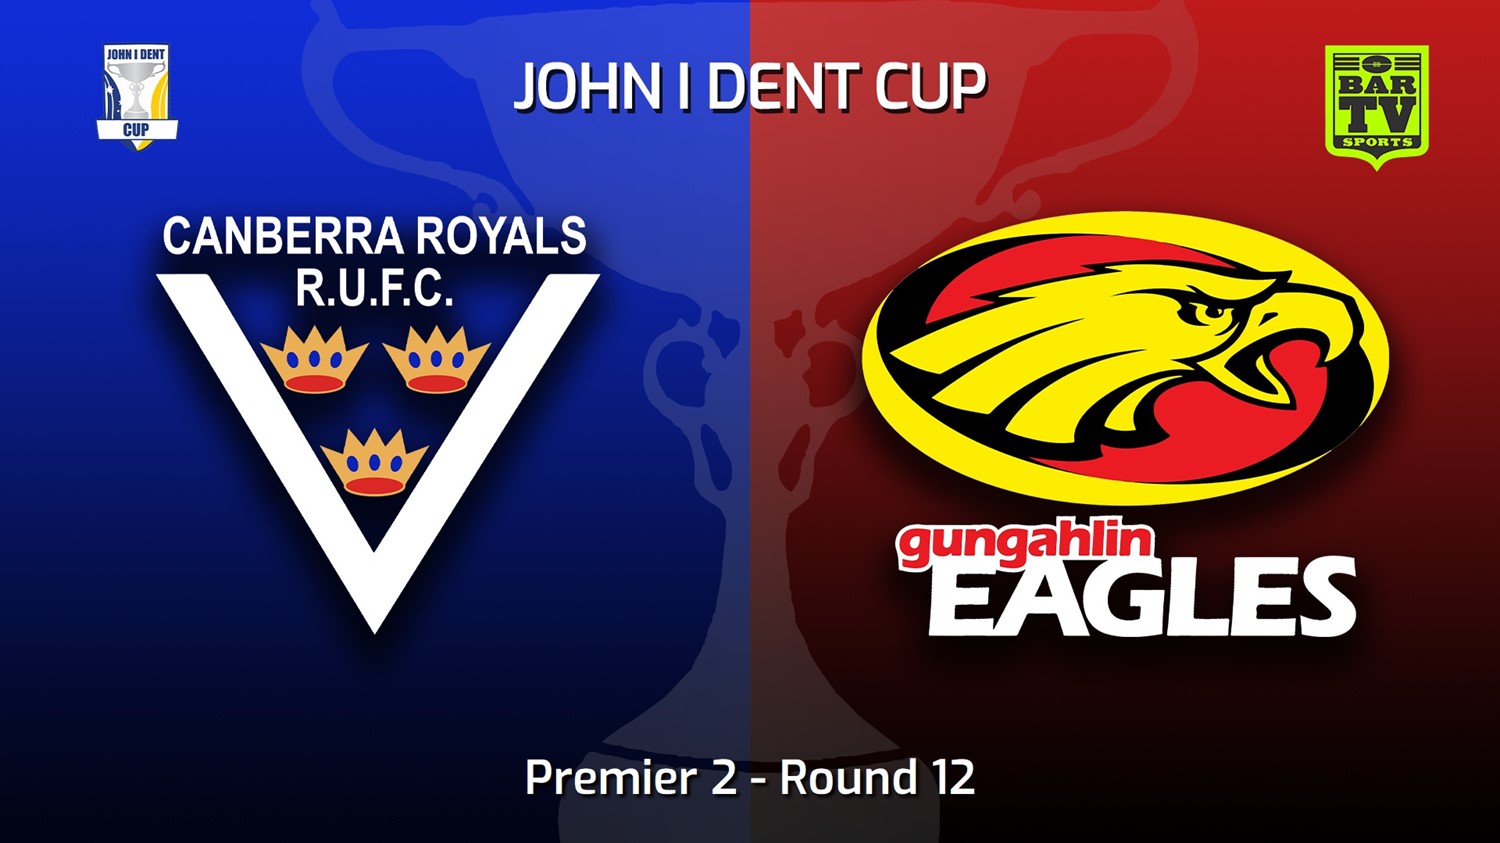 220716-John I Dent (ACT) Round 12 - Premier 2 - Canberra Royals v Gungahlin Eagles Slate Image